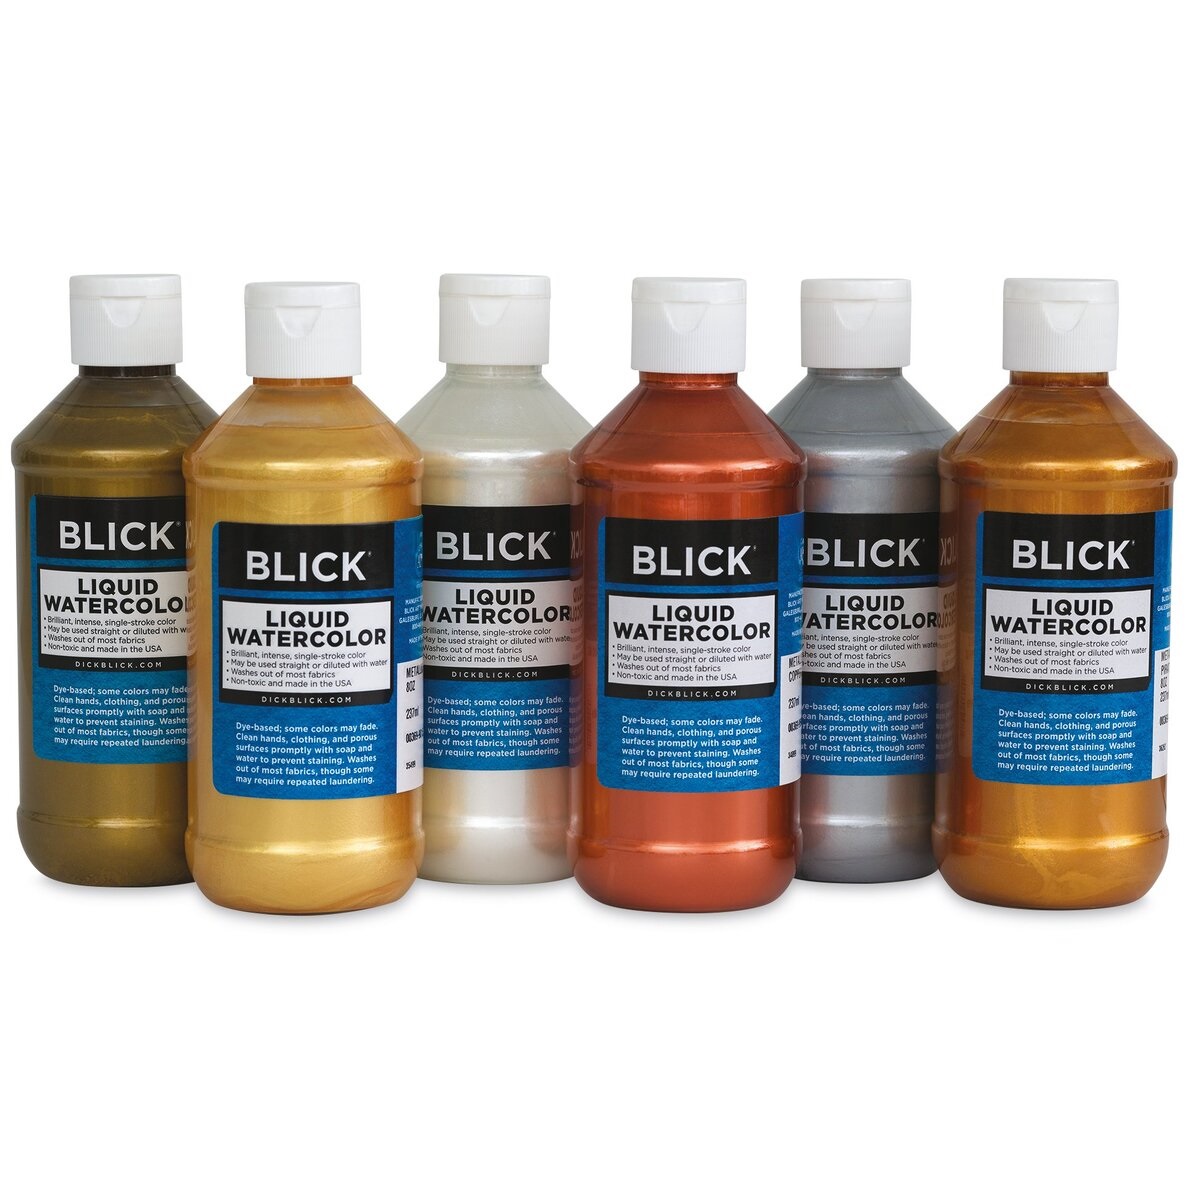 Blick Liquid Watercolors and Sets